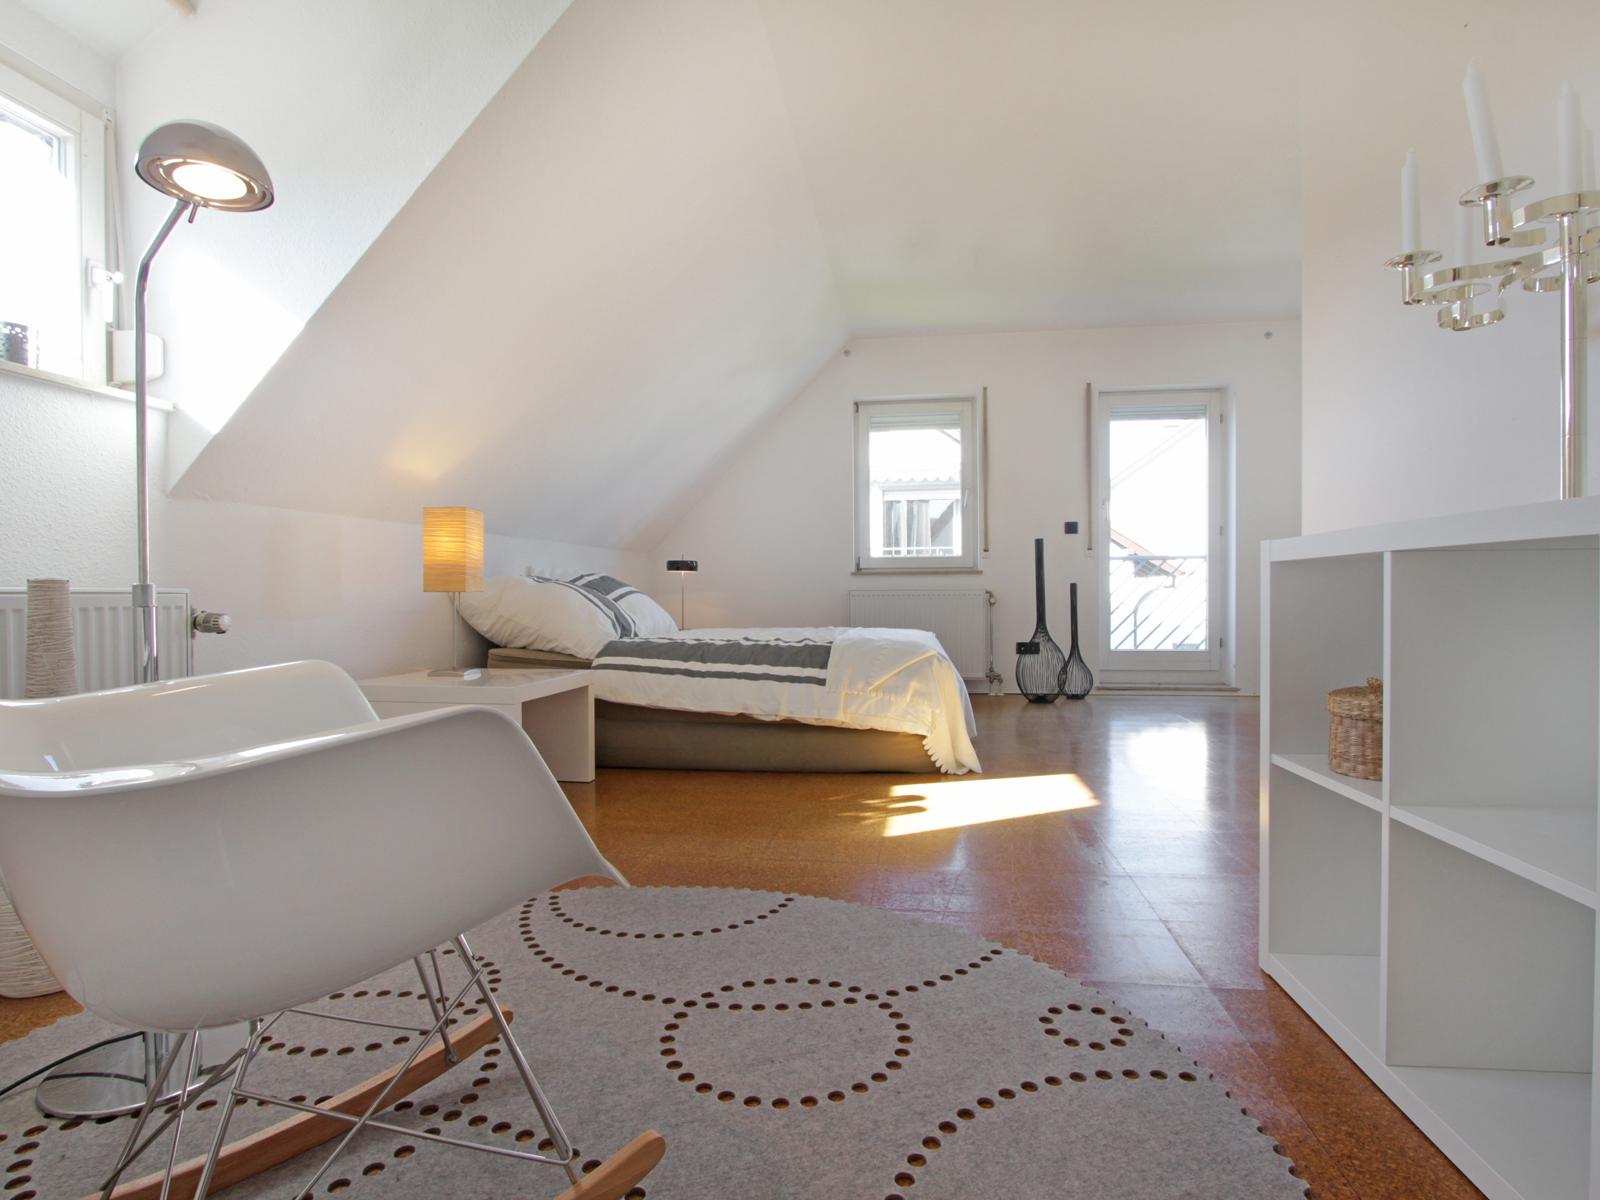 Raum für Träume #wandregal #teppich #sideboard #schaukelstuhl #doppelhaushälfte #wohngestaltung ©Scheewe-Pfeil